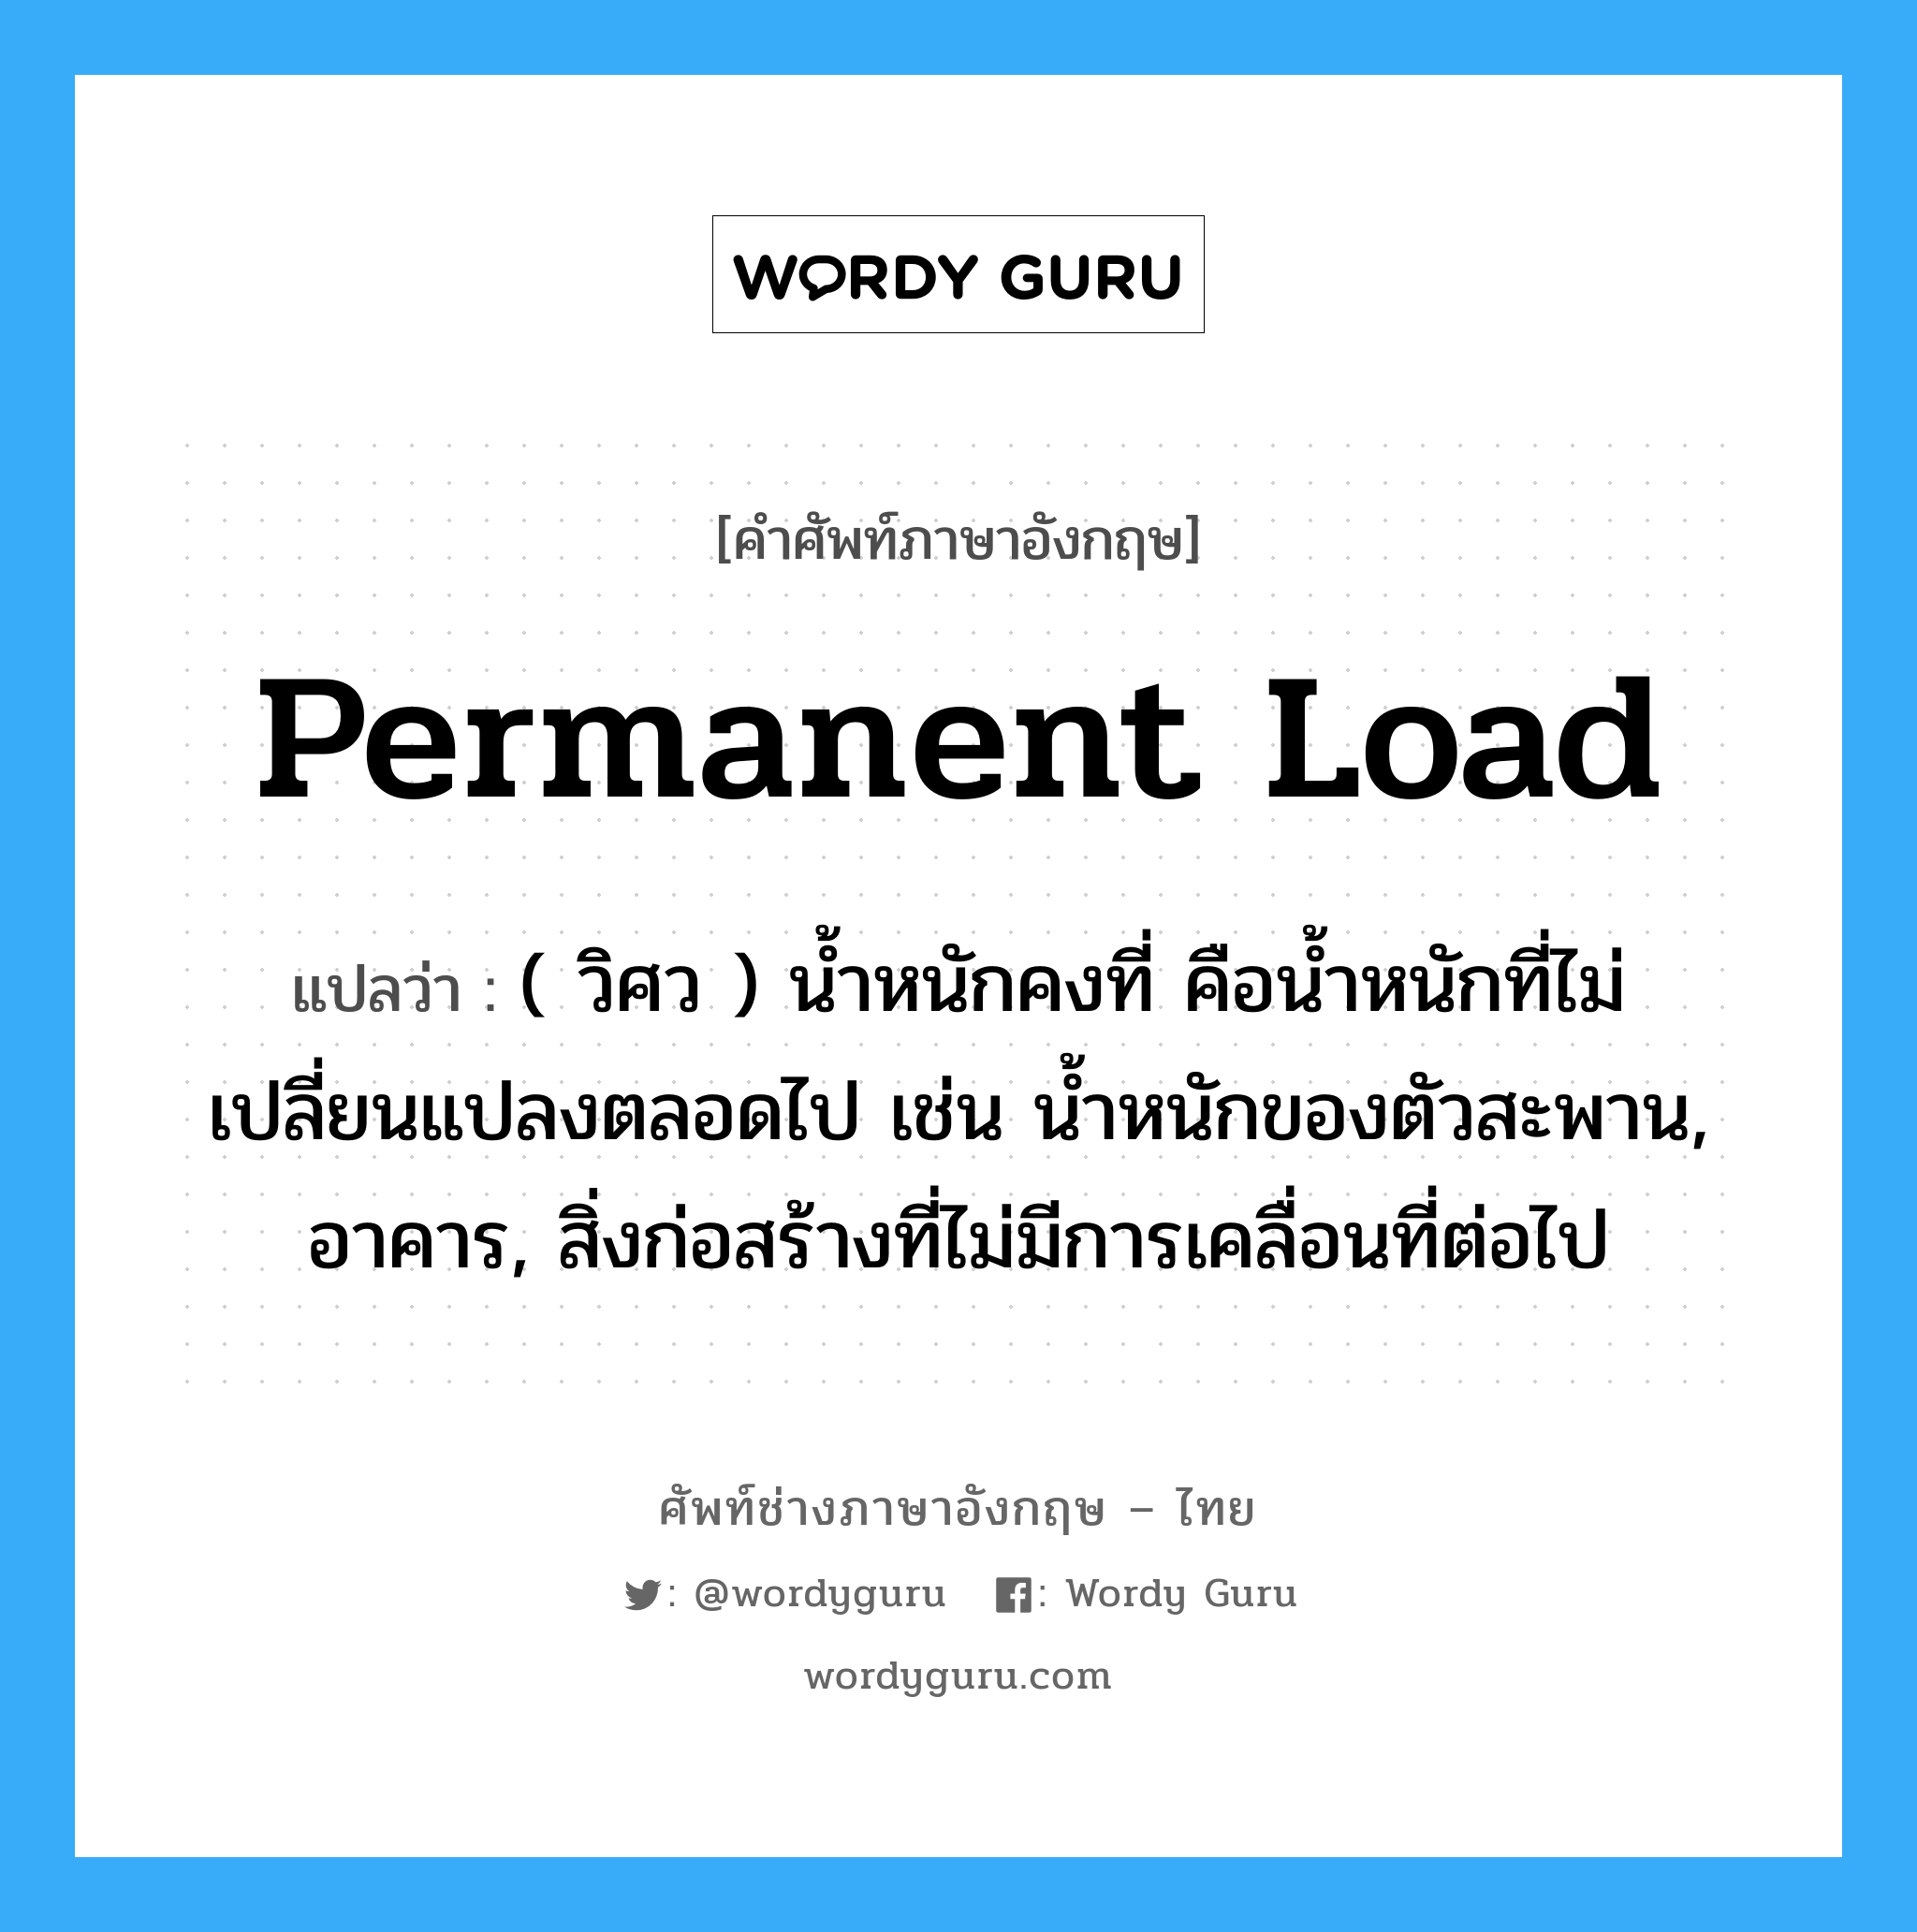 permanent load แปลว่า?, คำศัพท์ช่างภาษาอังกฤษ - ไทย permanent load คำศัพท์ภาษาอังกฤษ permanent load แปลว่า ( วิศว ) น้ำหนักคงที่ คือน้ำหนักที่ไม่เปลี่ยนแปลงตลอดไป เช่น น้ำหนักของตัวสะพาน, อาคาร, สิ่งก่อสร้างที่ไม่มีการเคลื่อนที่ต่อไป